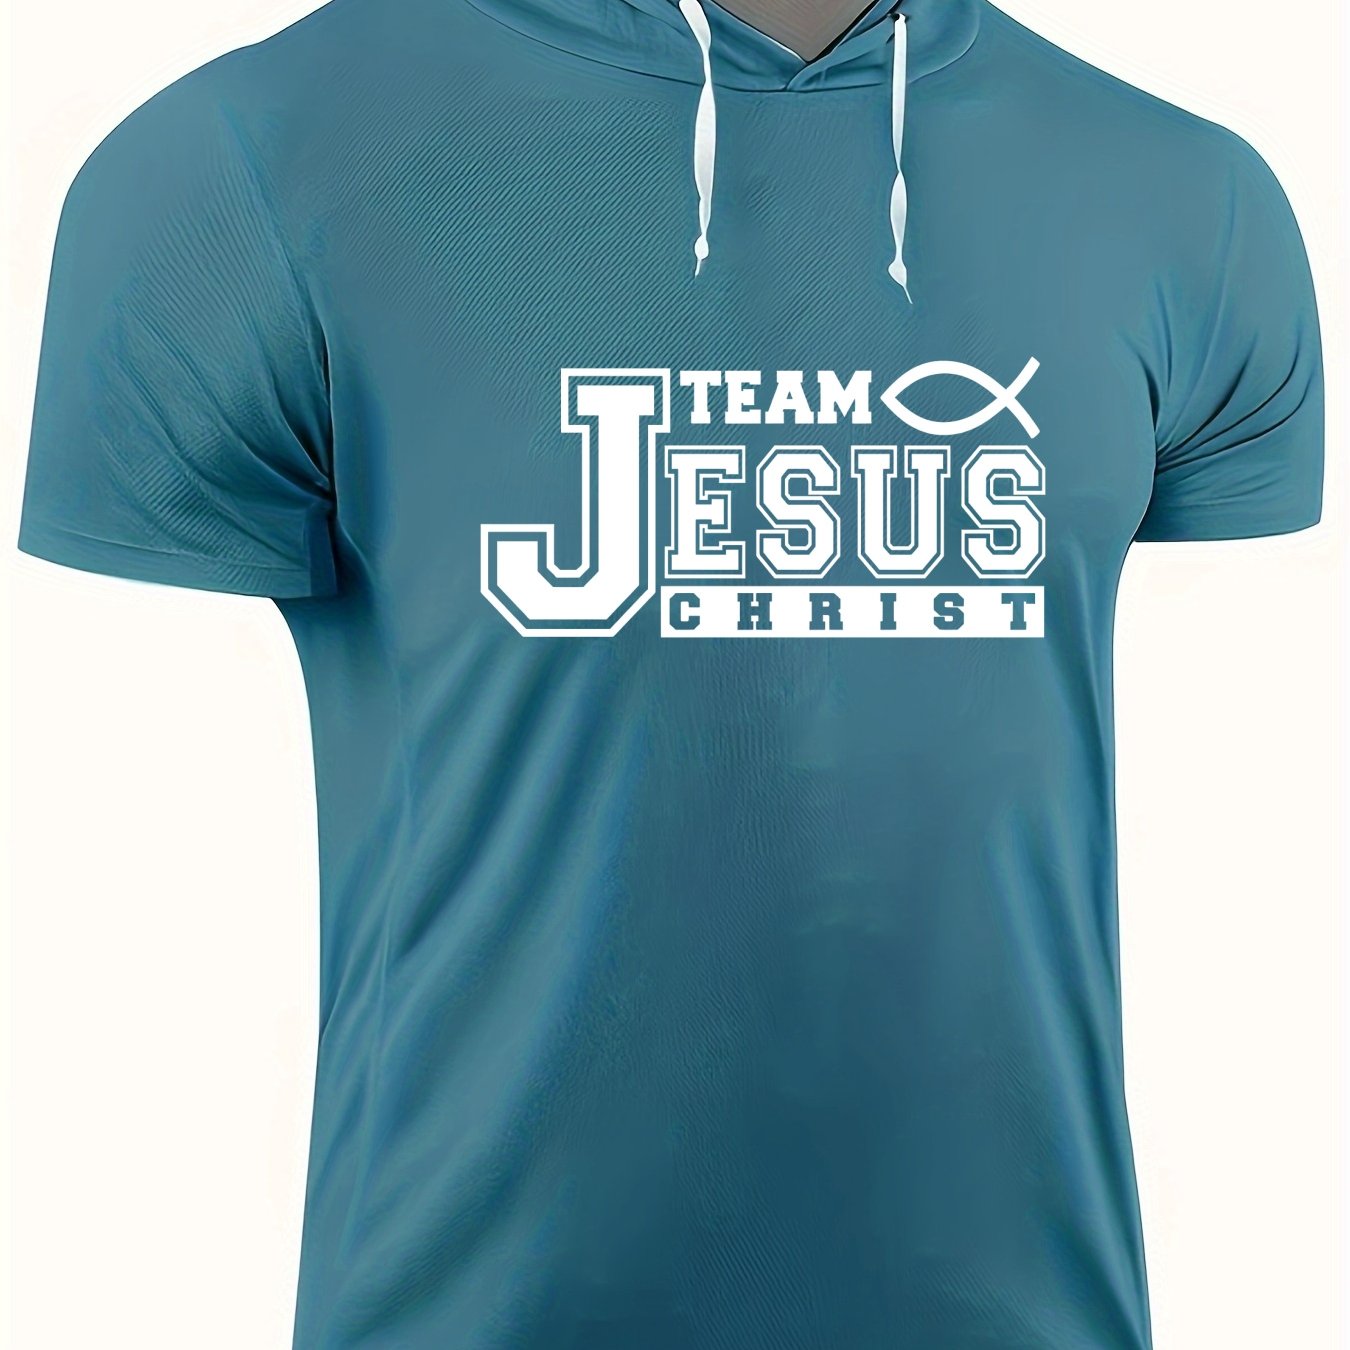 Team Jesus Christ Plus Size Men's Christian Hooded T-shirt claimedbygoddesigns